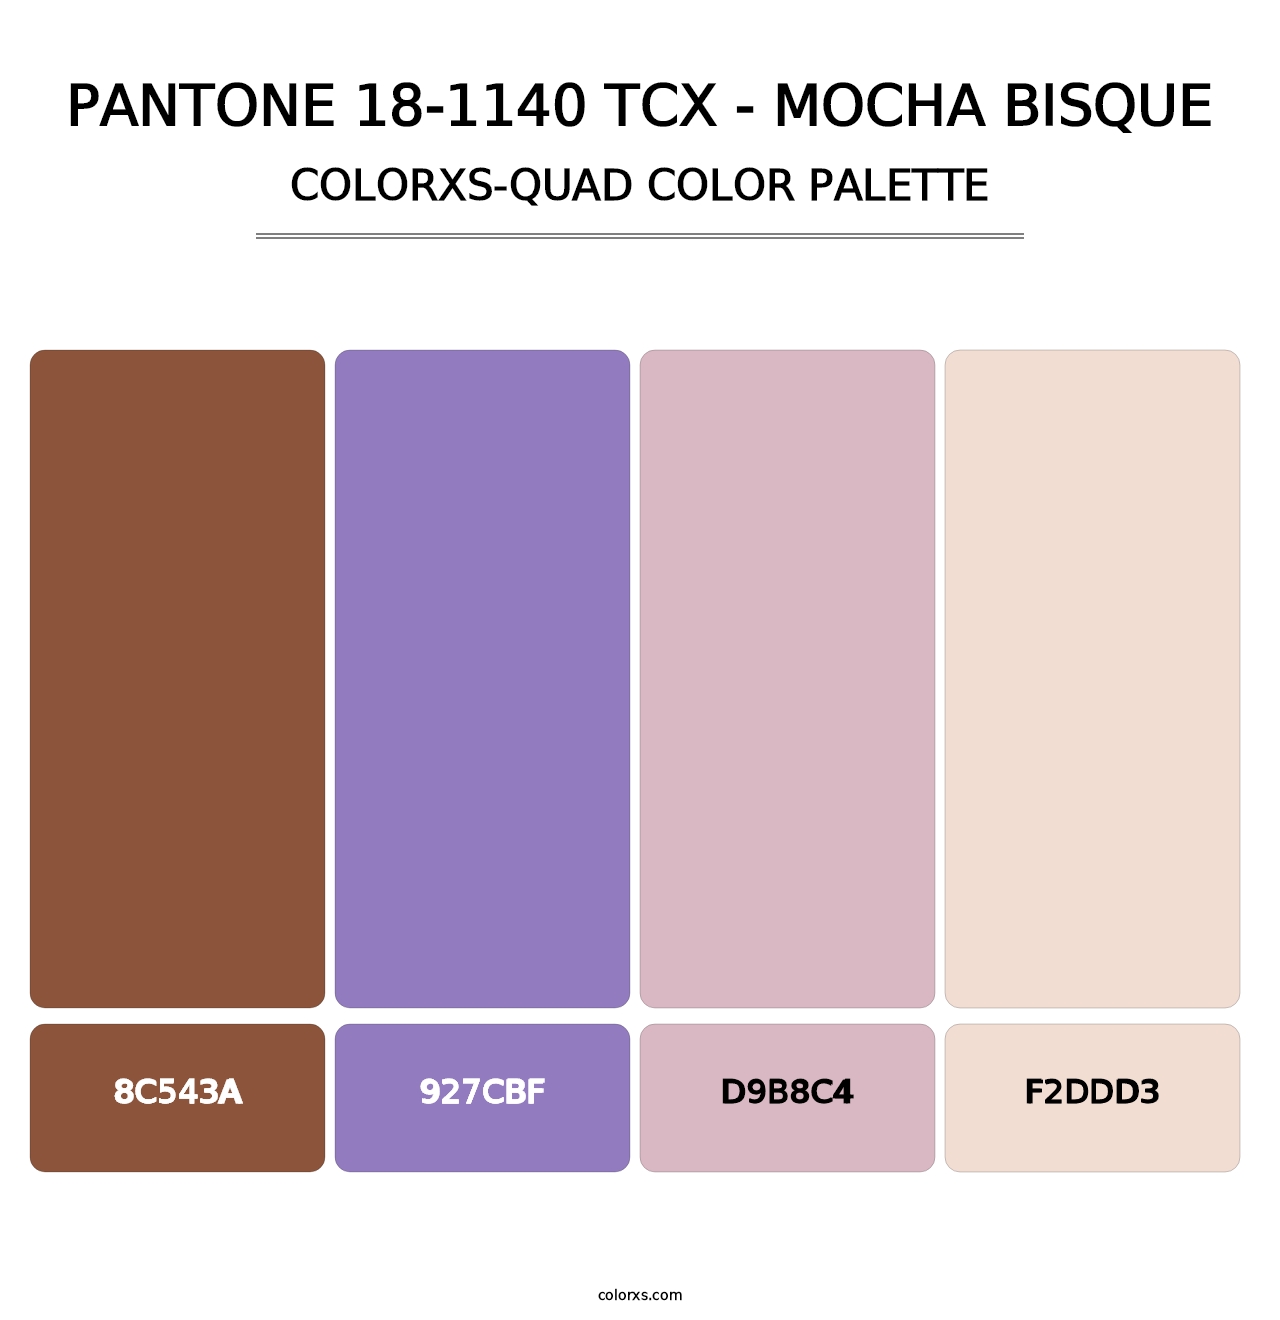 PANTONE 18-1140 TCX - Mocha Bisque - Colorxs Quad Palette